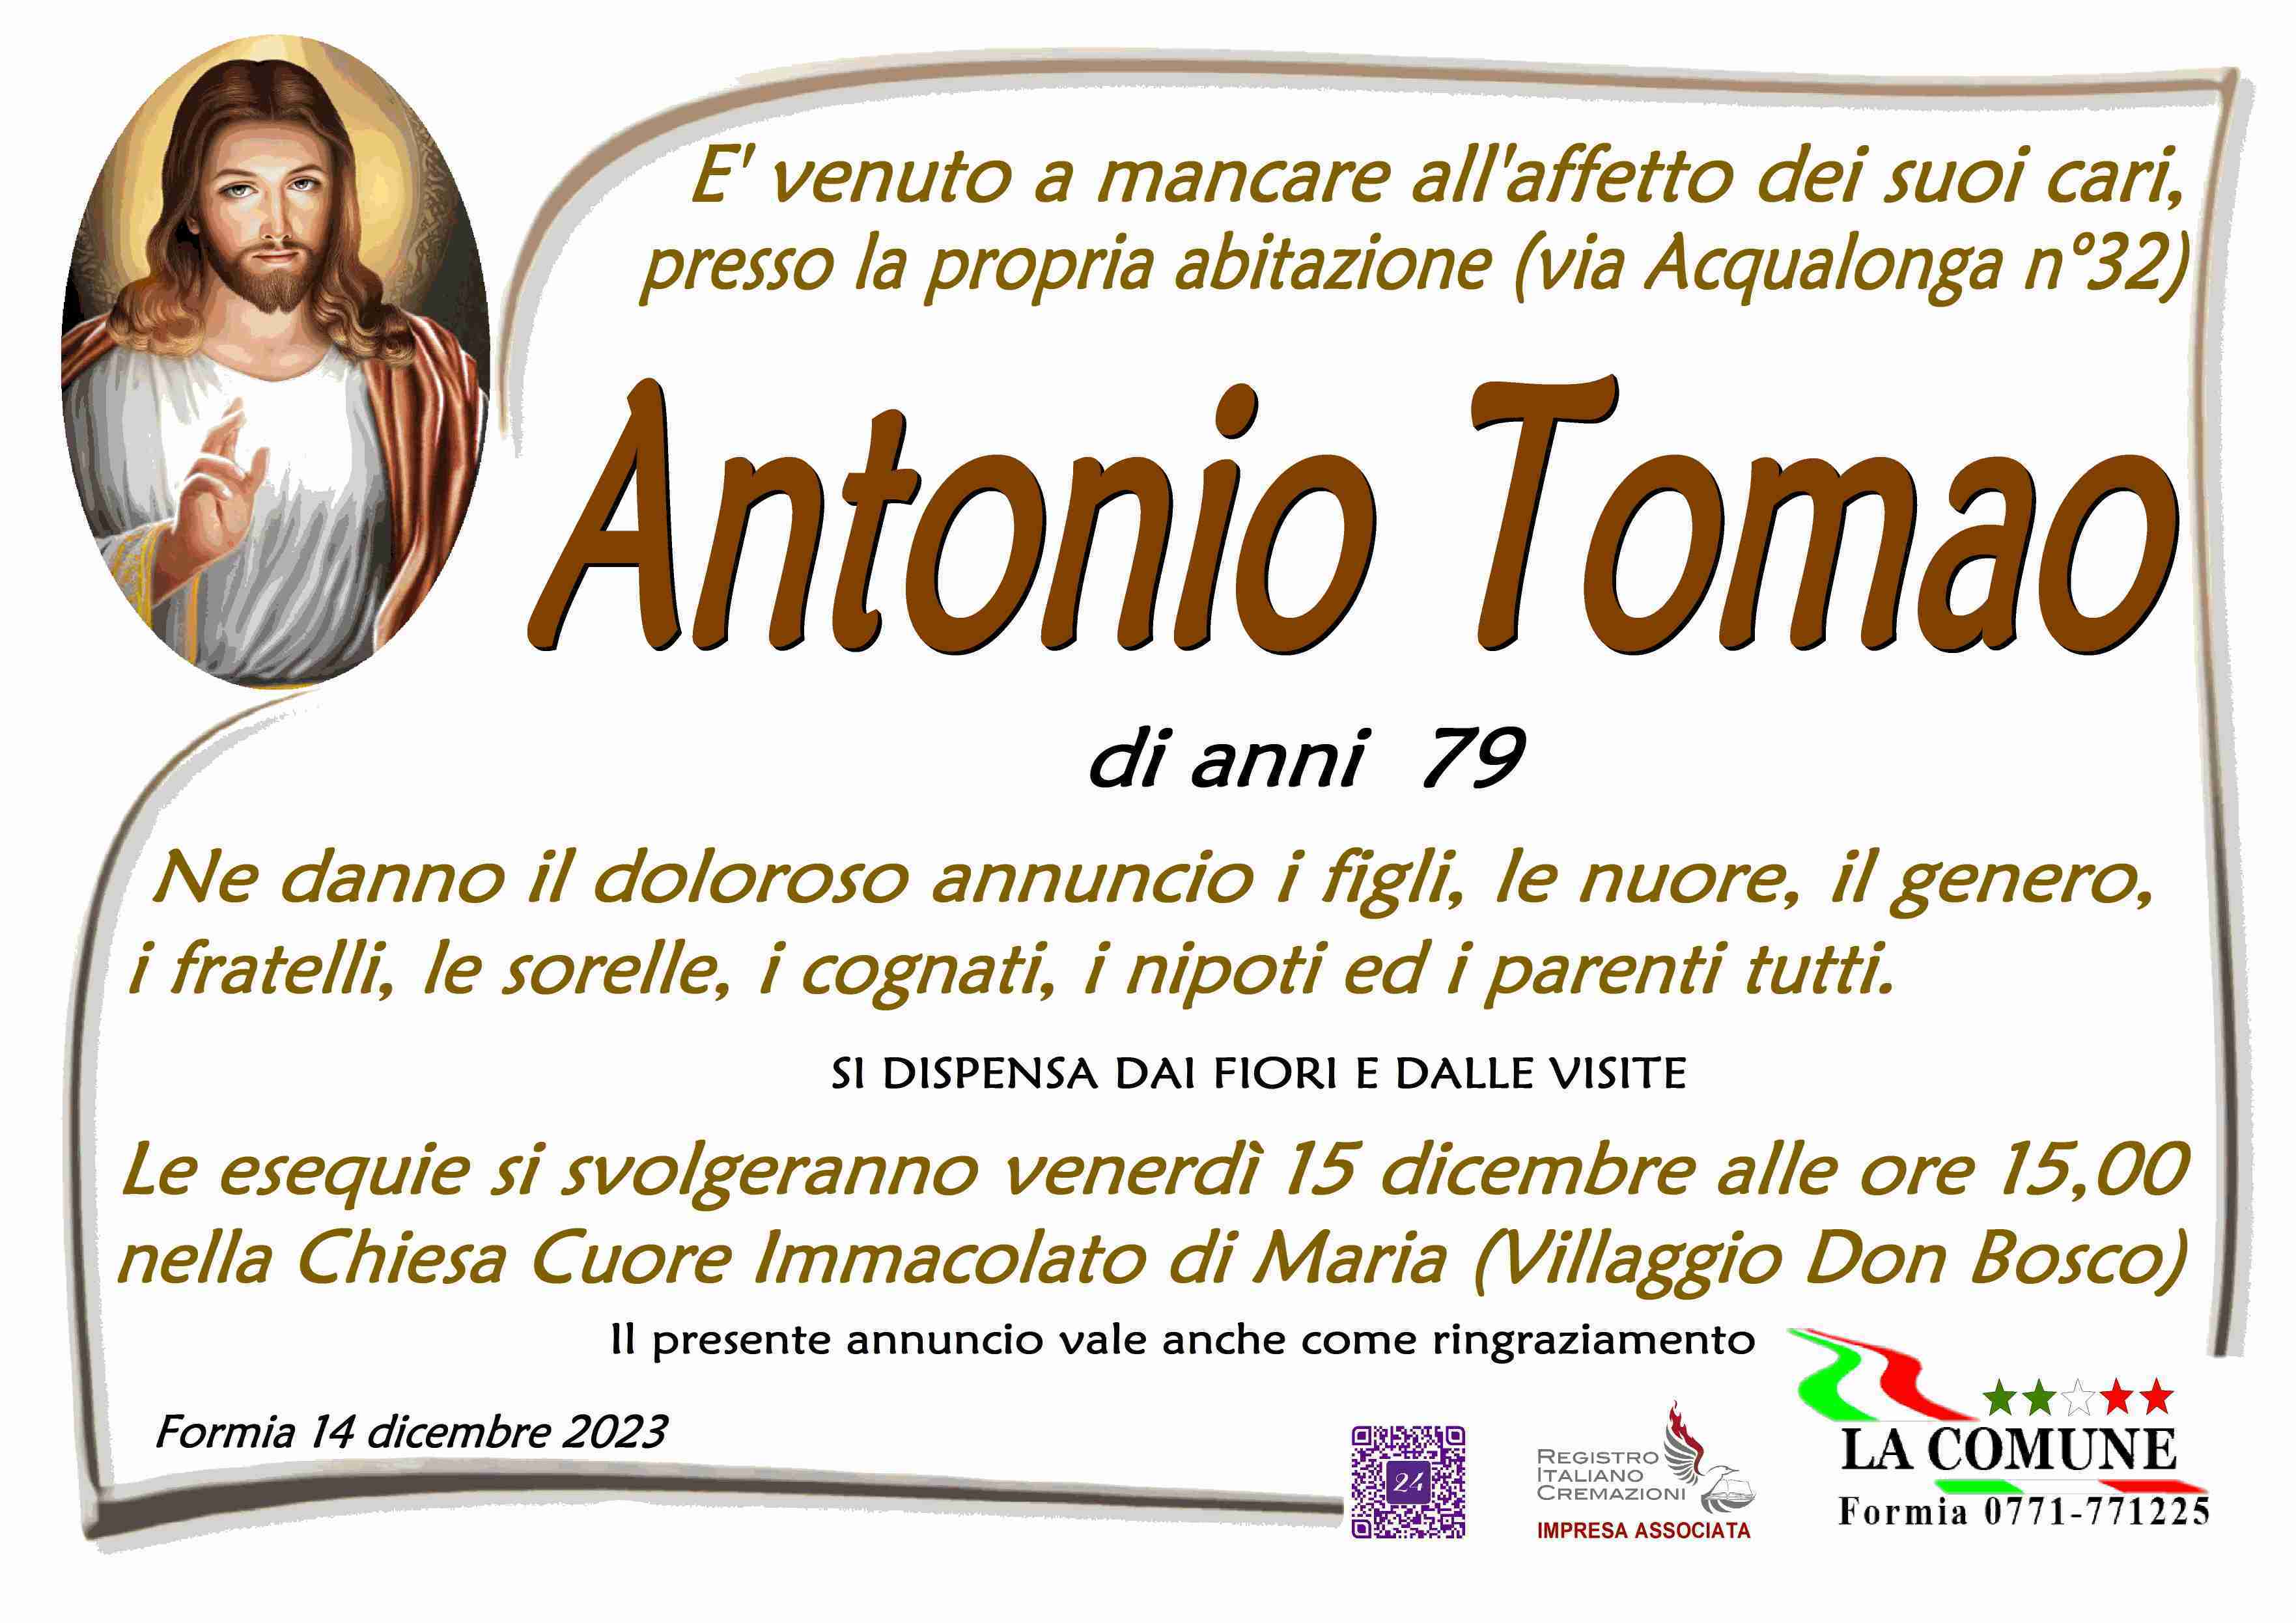 Antonio Tomao